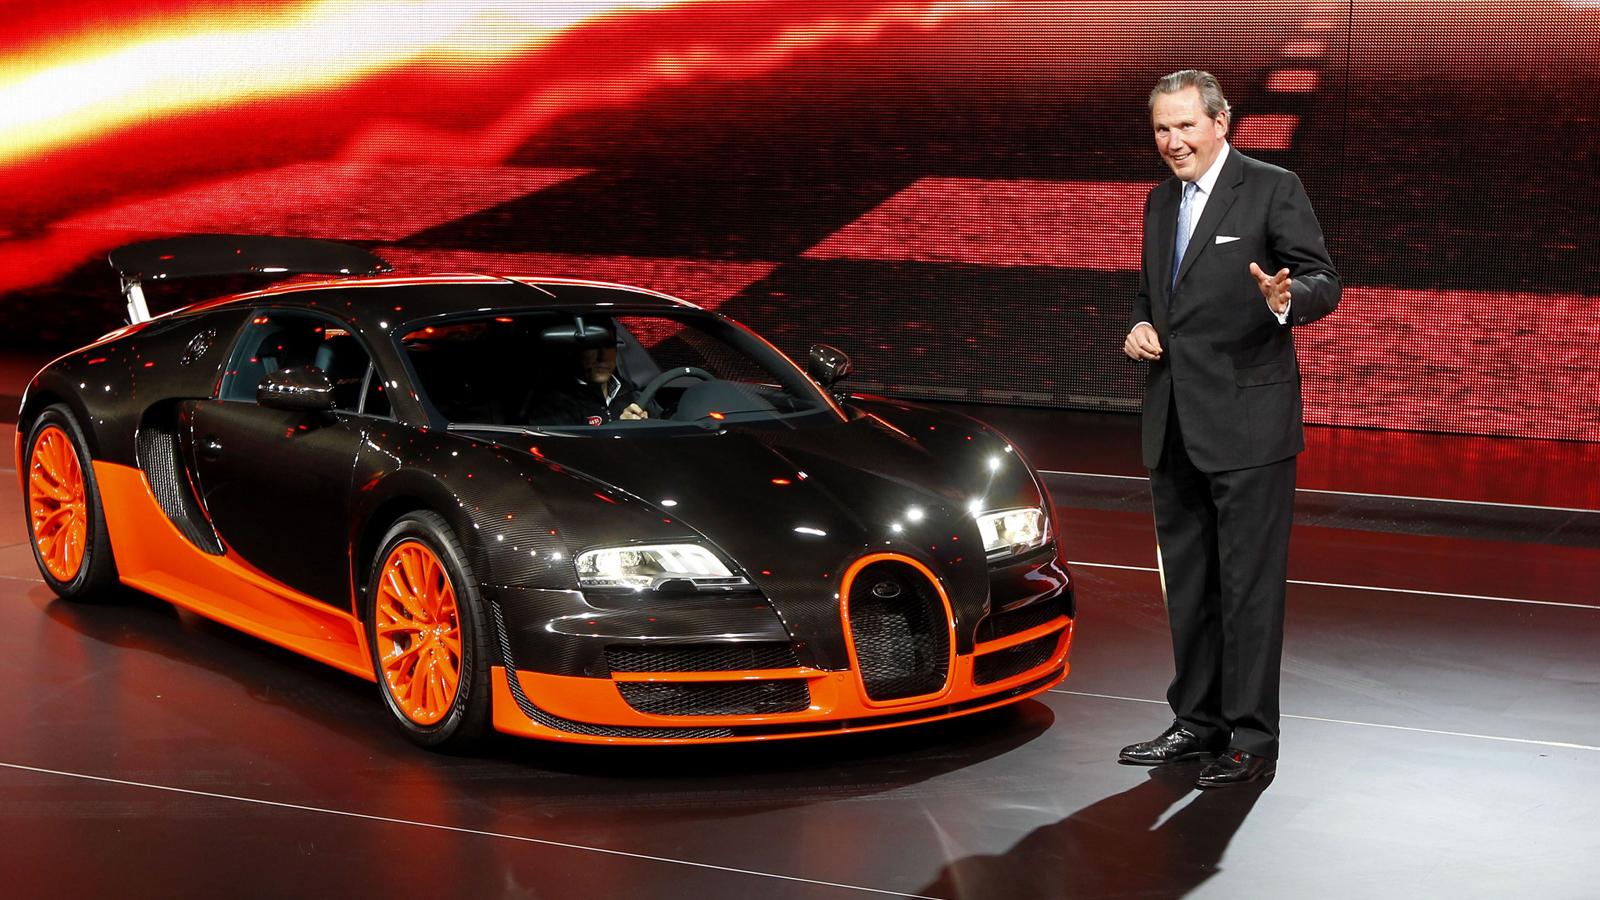 Bugatti Veyron Supersport  Superbilen som inte behöver någon närmare presentation, med en toppfart på över 420 km/tim. Motor: 16 cyl. 1200 hk. Acceleration: 0-100 km/tim på 2,4 s. Pris: 2,6 miljoner dollar - ca. 17 800 000 kronor.